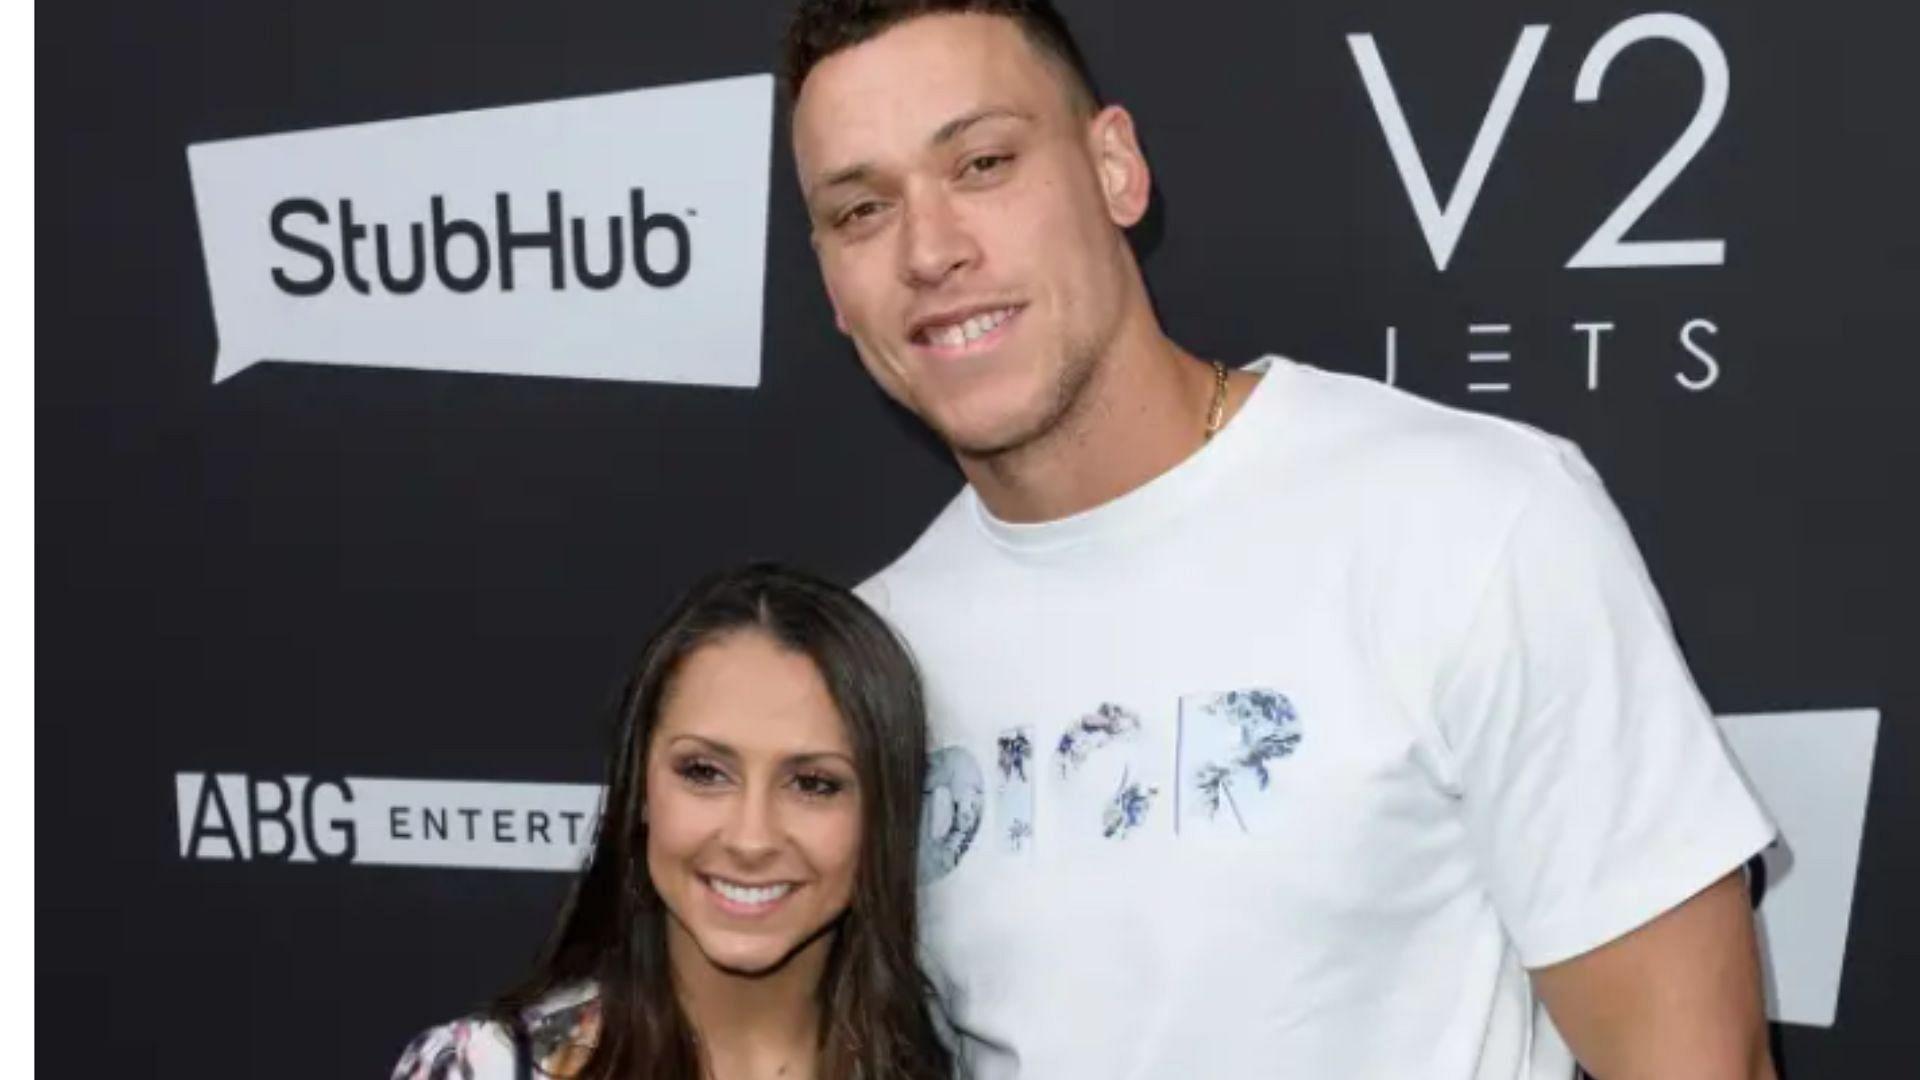 Is Aaron Judge Married? New York Yankees Star's Wife Is Samantha Bracksieck